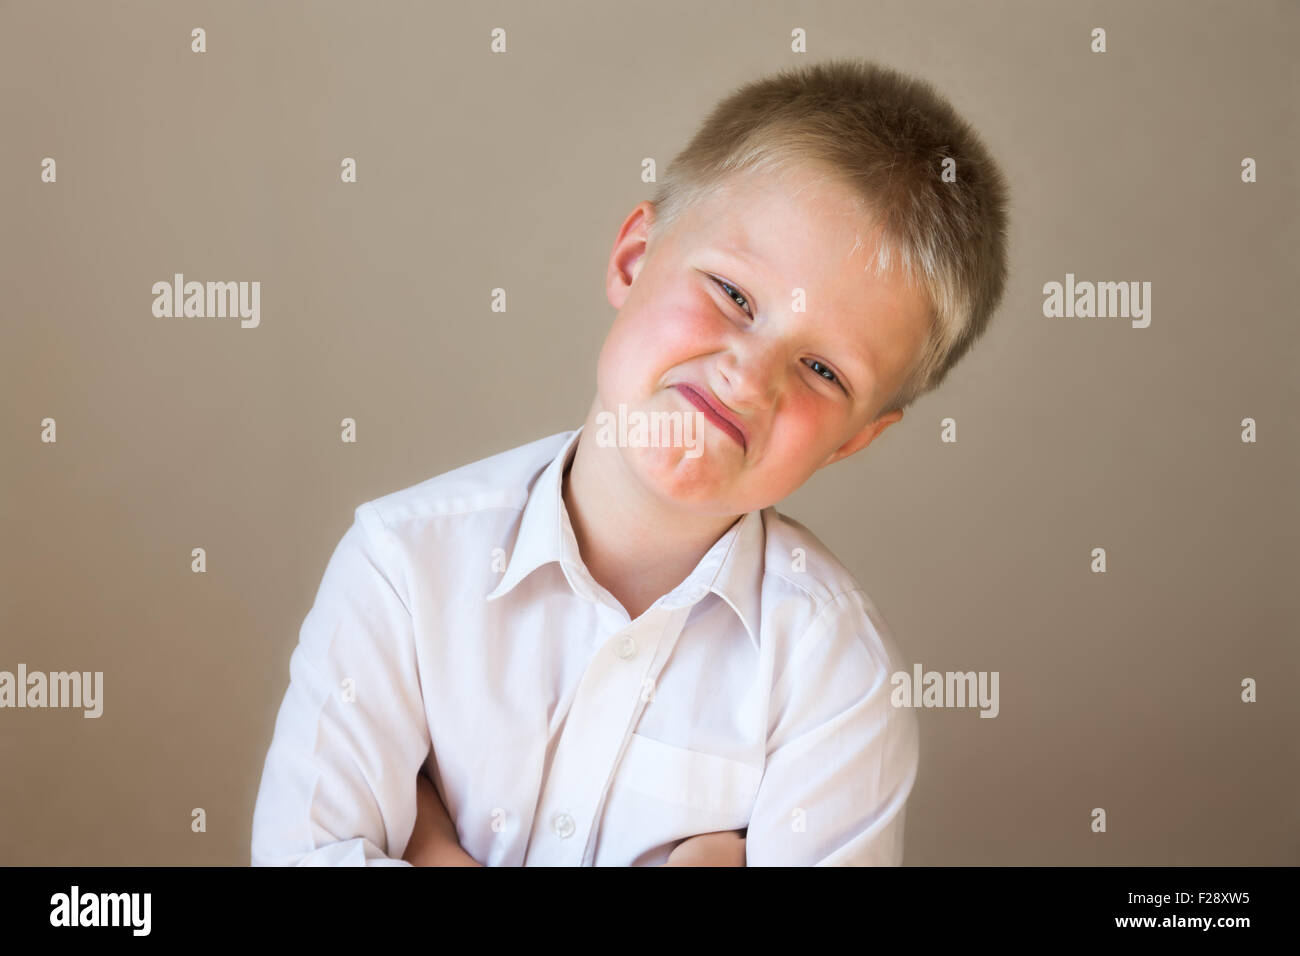 Arrogante ungläubig lustig Kind (junge) posiert in weißen Hemd über grauen Hintergrund Stockfoto